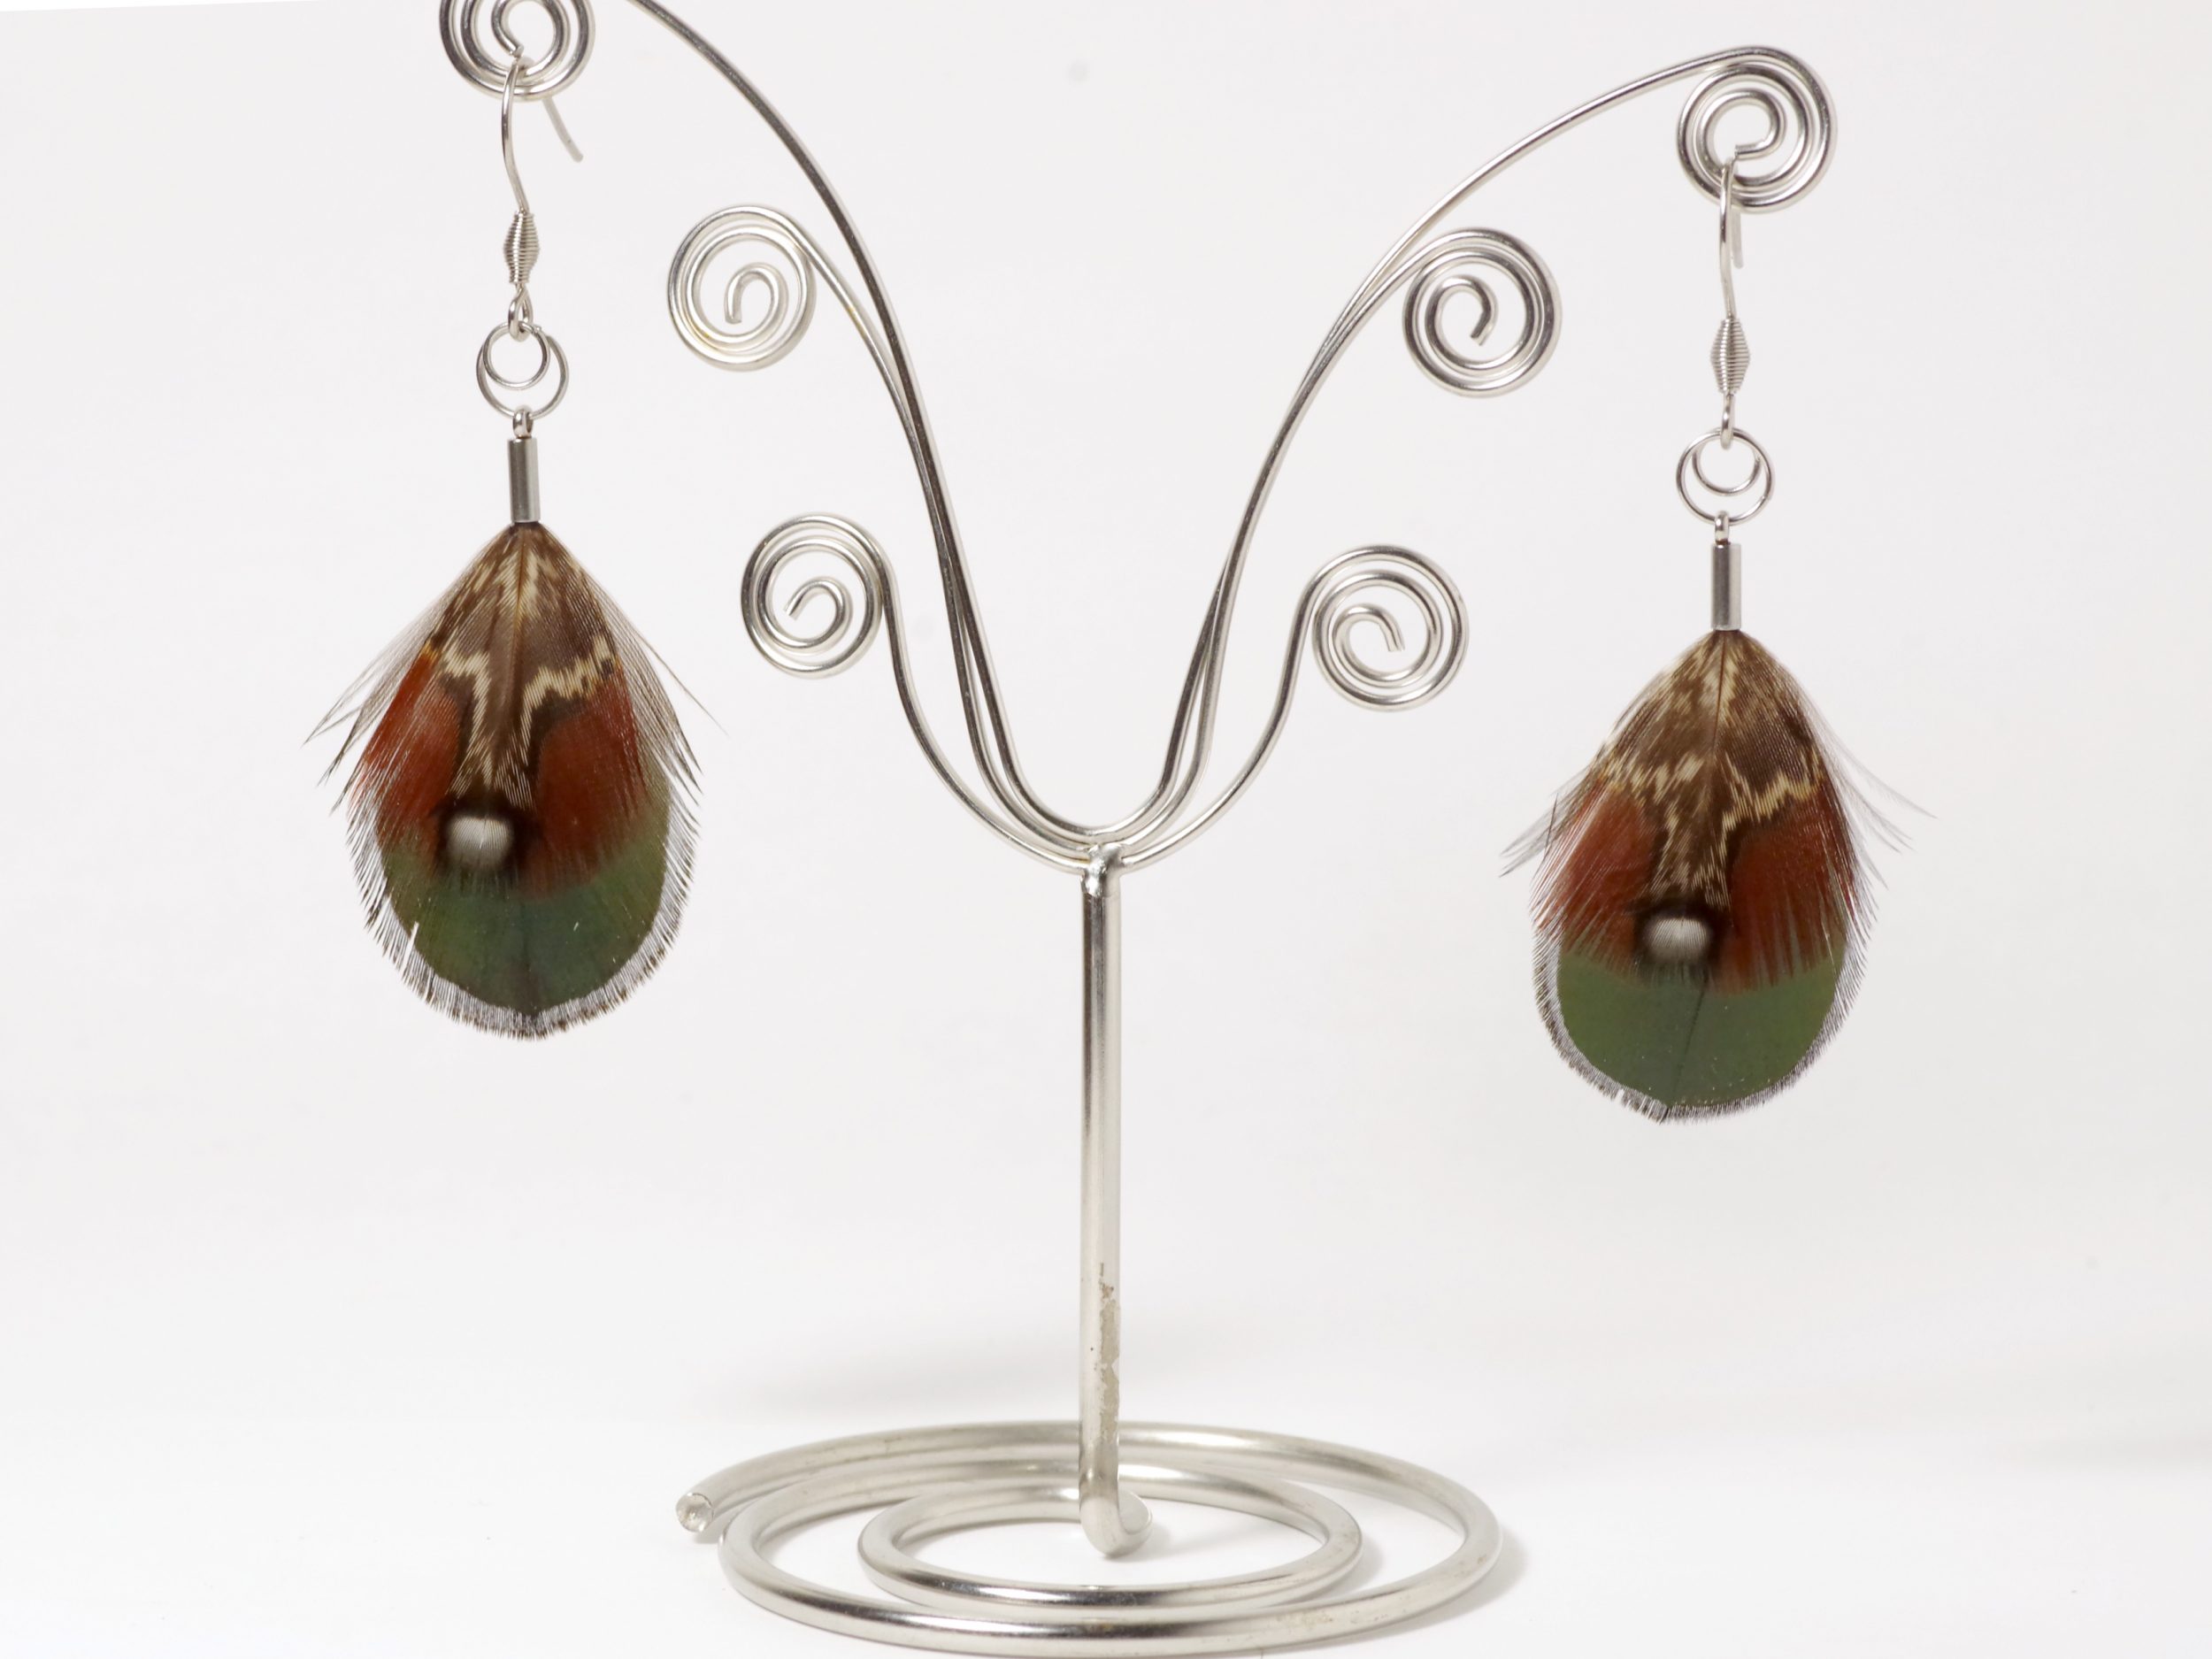 Une paire de boucles d'oreilles avec de petites plumes vertes et rousses avec des graphismes blancs et noir.